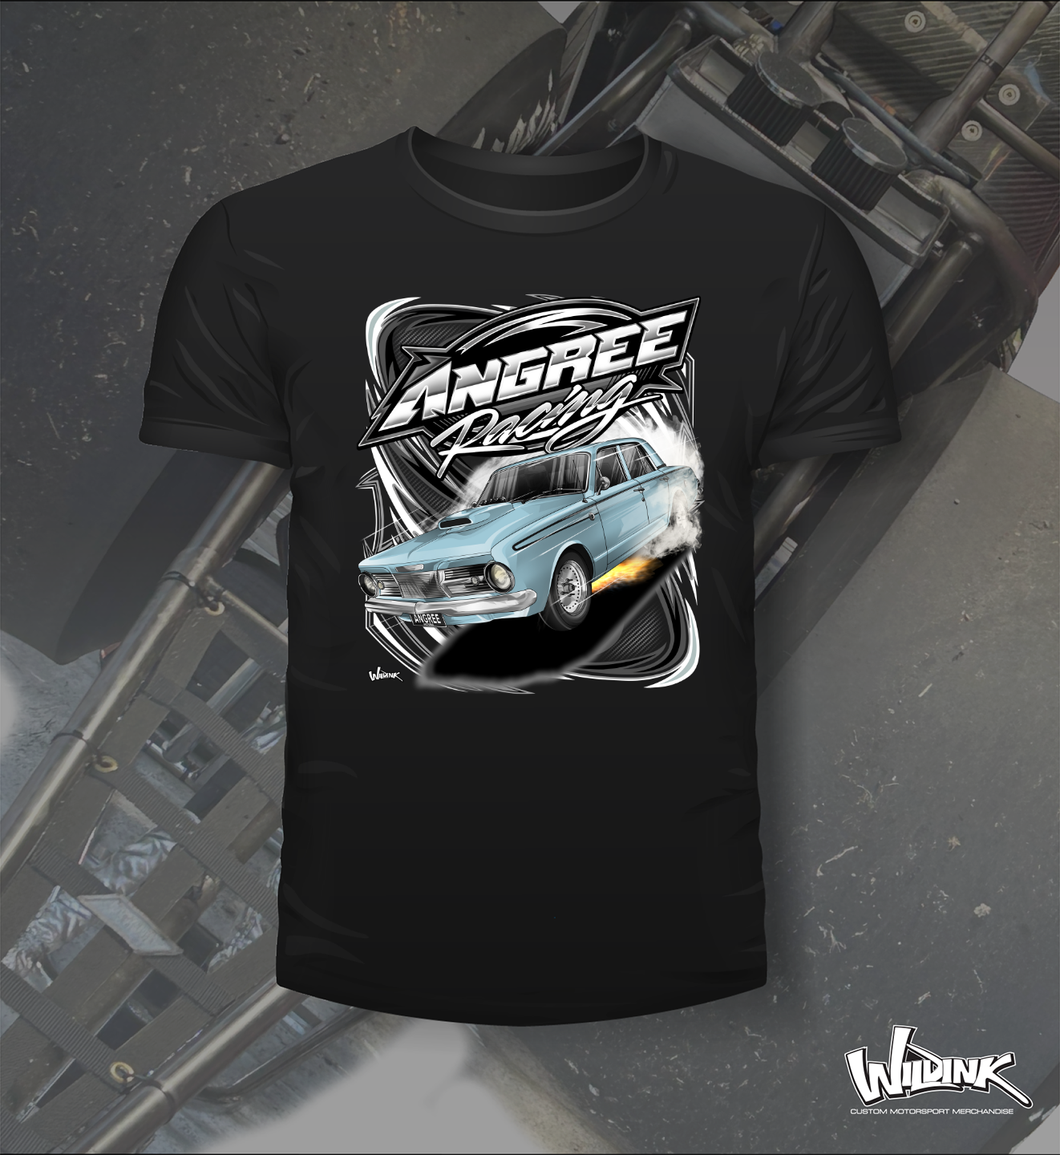 Angree Racing - Tee Shirt